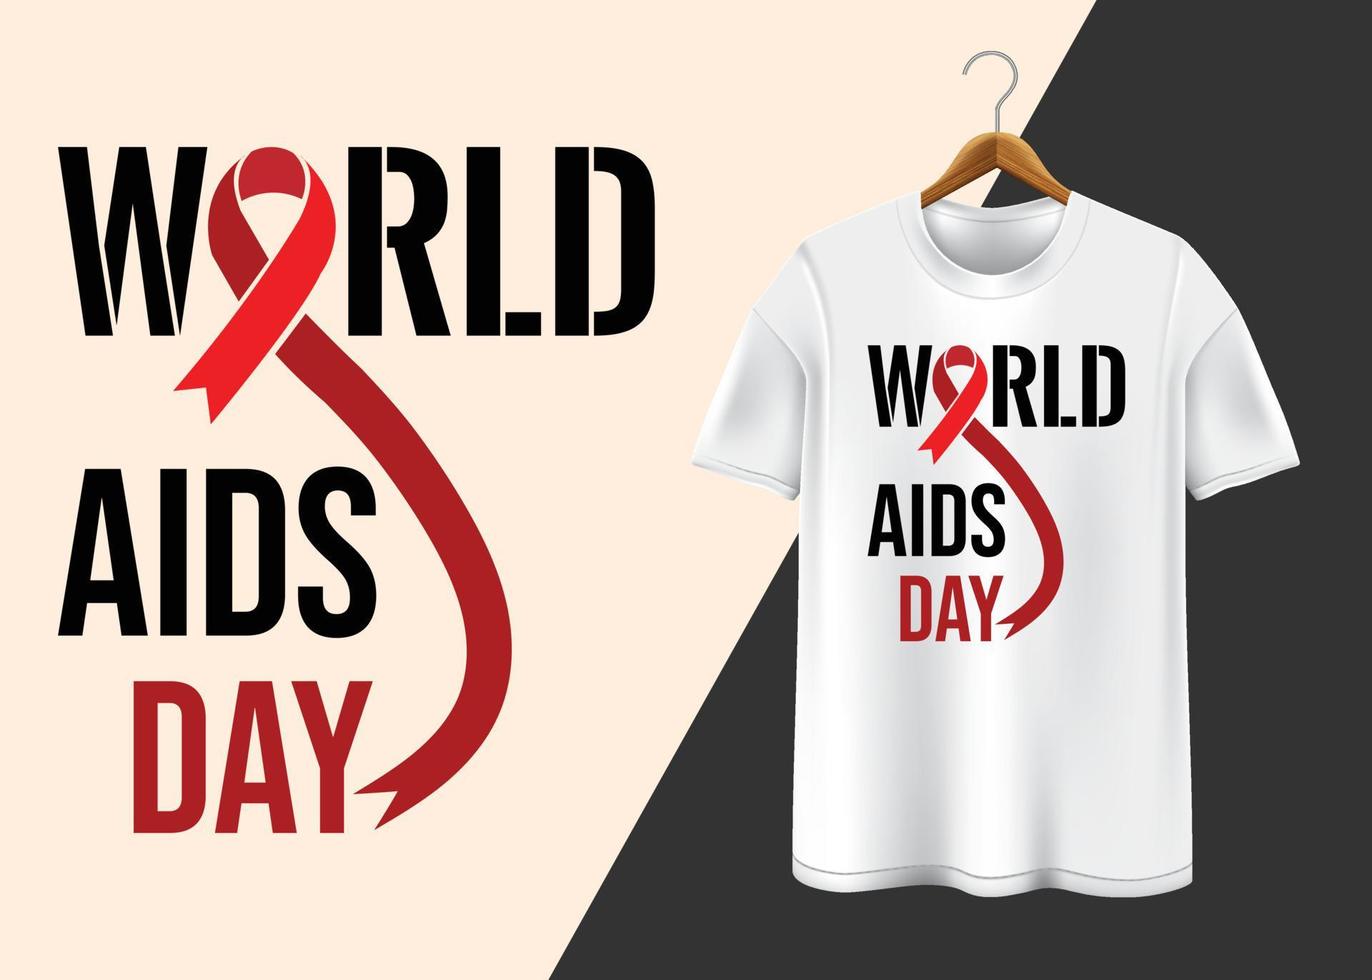 värld AIDS dag 1:a december t-shirt design vektor